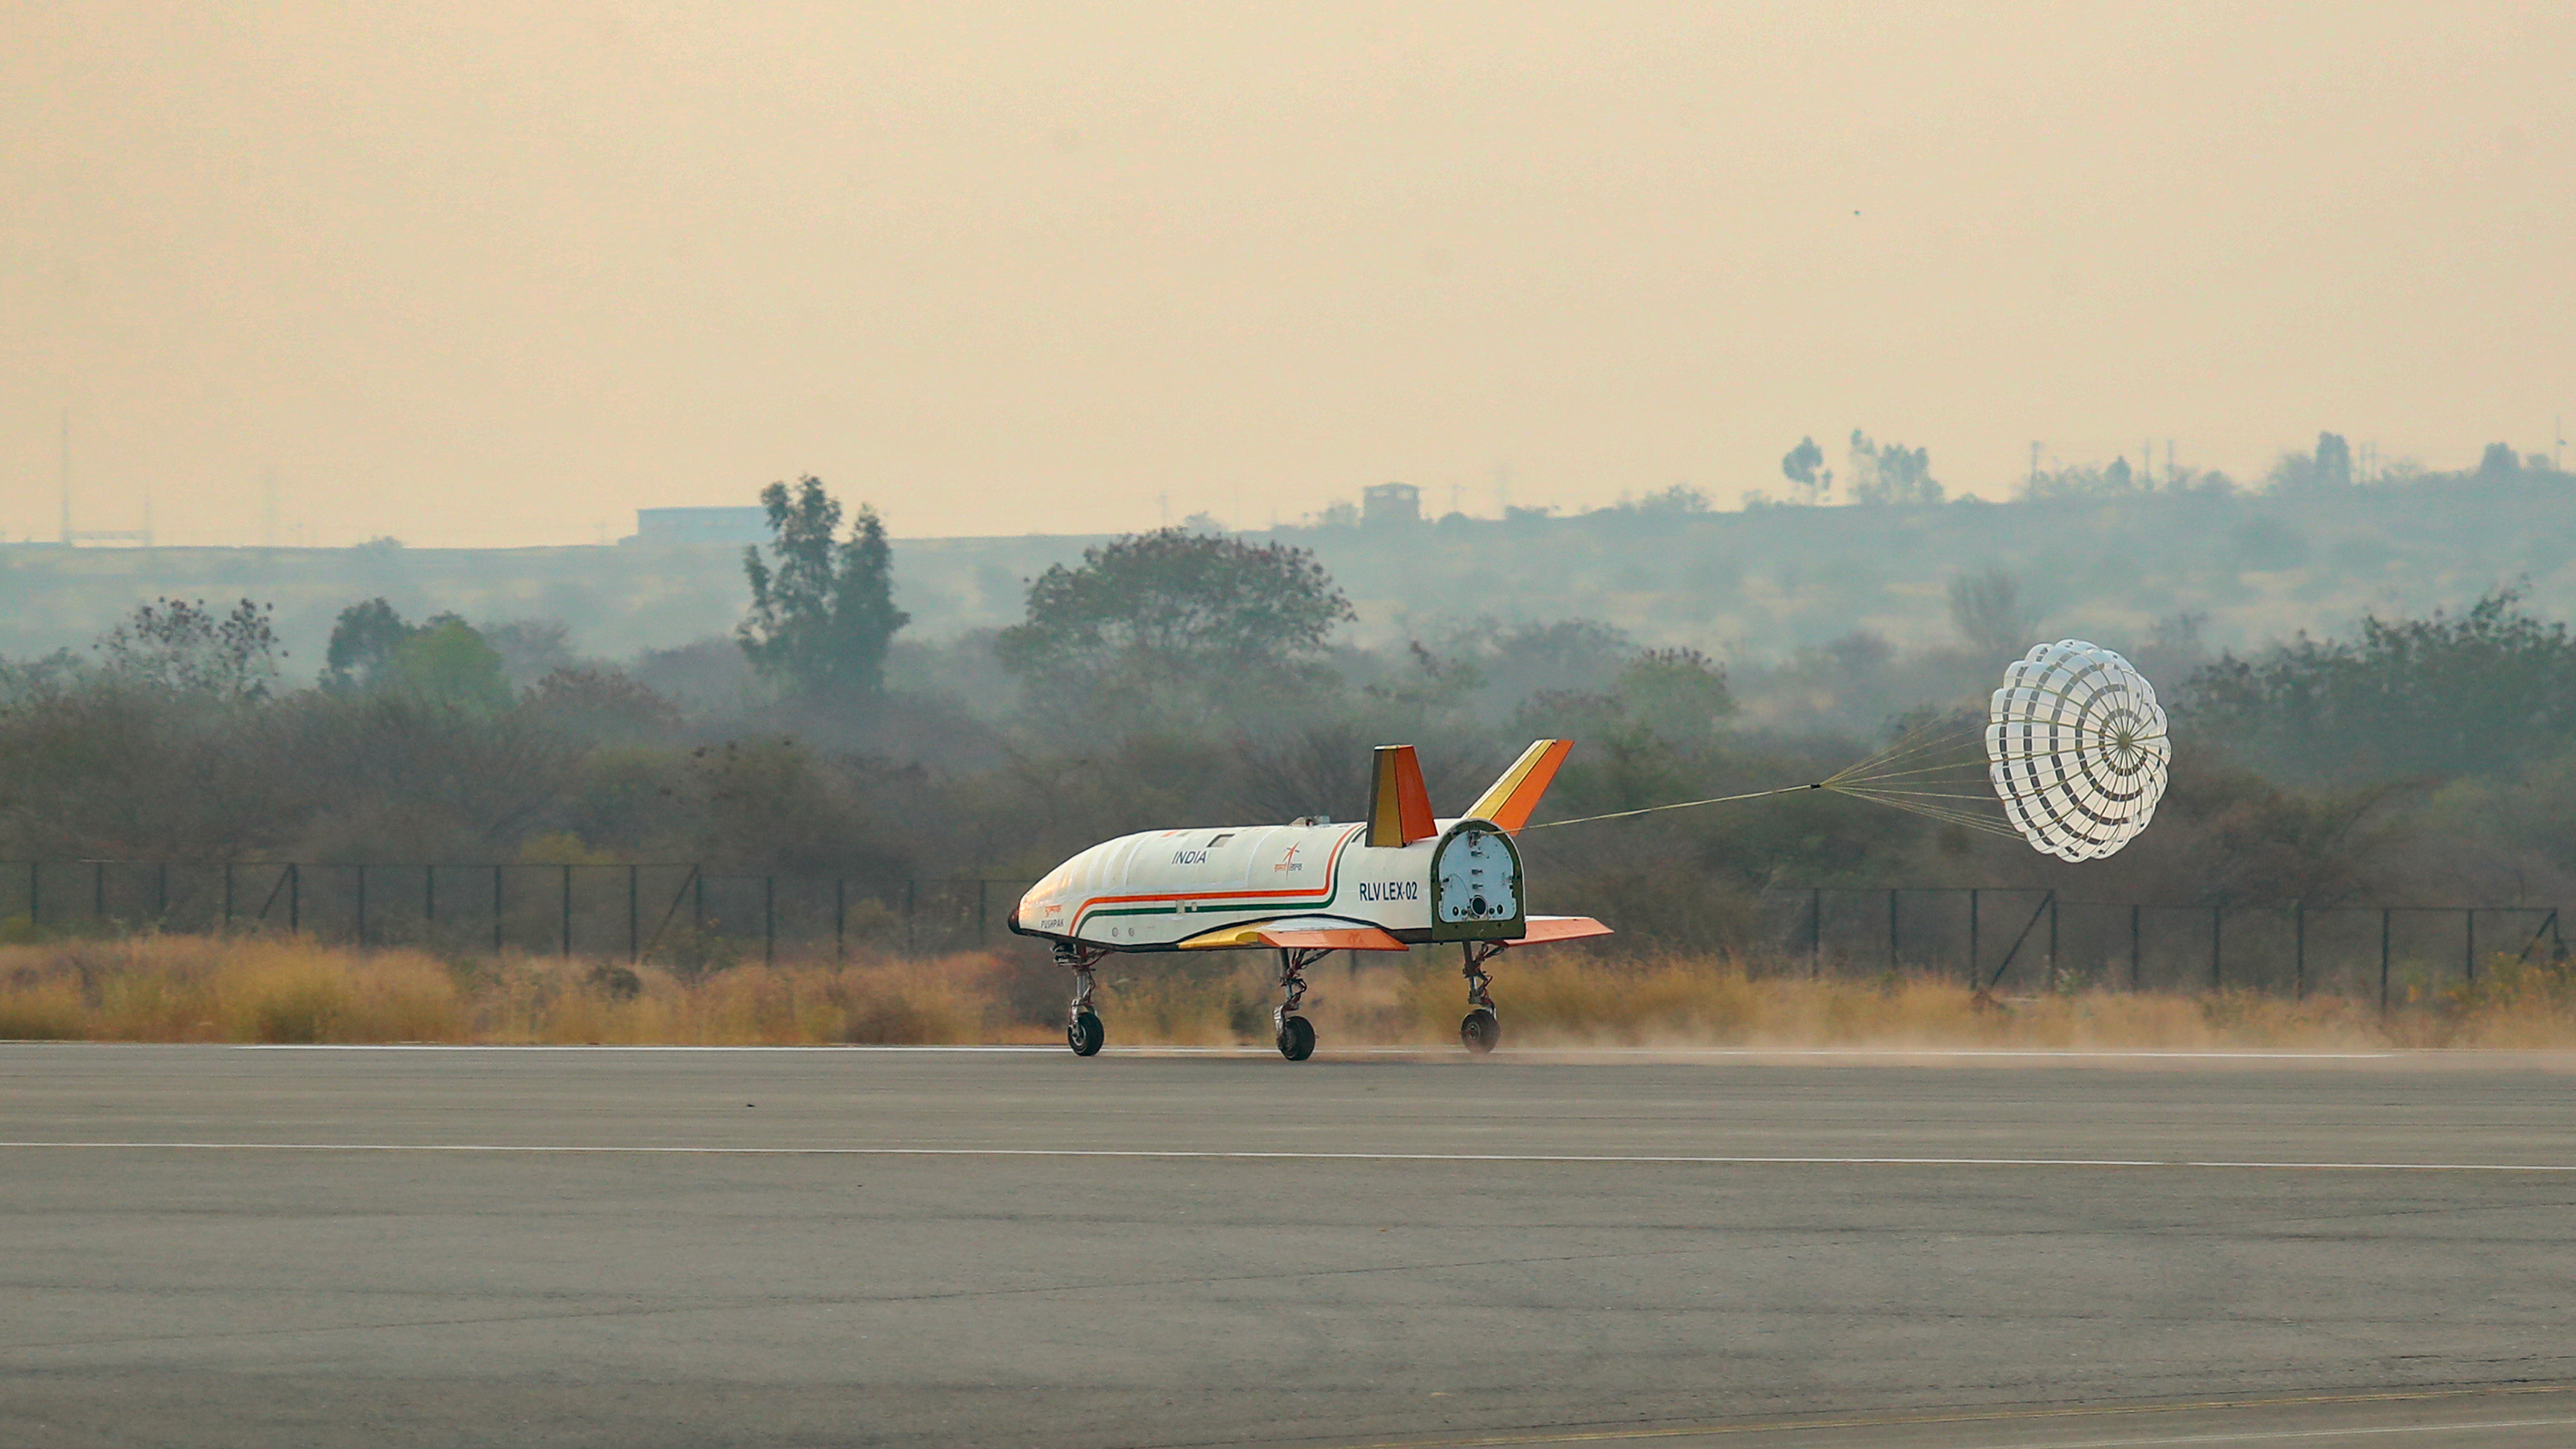 Atterrissage du prototype d'avion spatial indien lors de son second essai en vol libre, lâché depuis un hélicoptère. © Isro